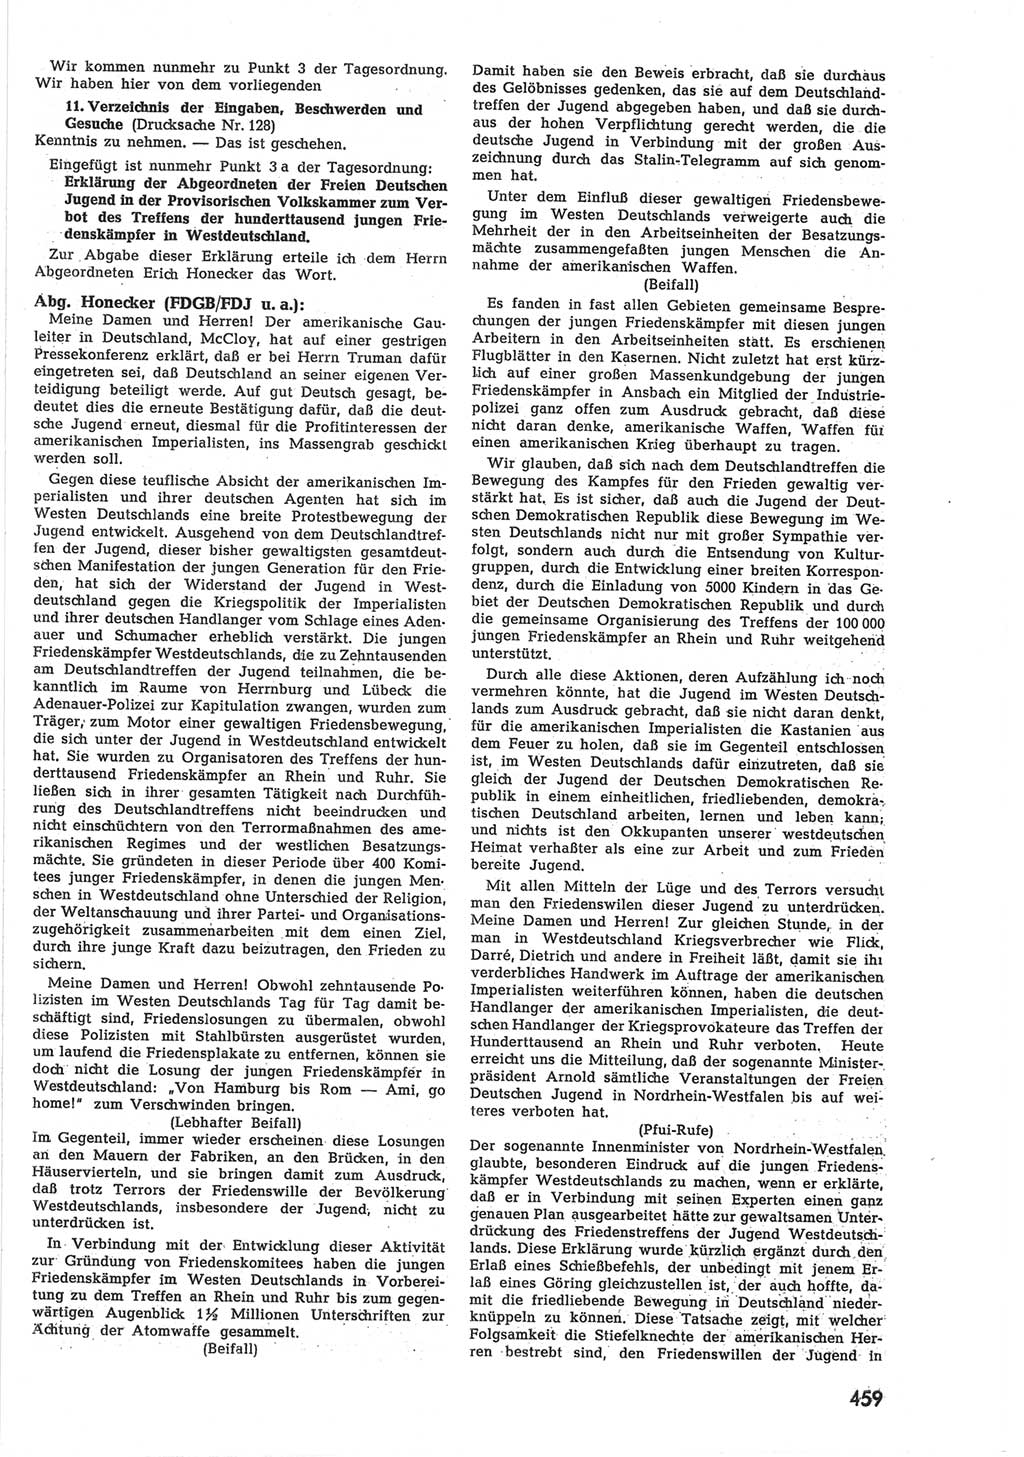 Provisorische Volkskammer (VK) der Deutschen Demokratischen Republik (DDR) 1949-1950, Dokument 477 (Prov. VK DDR 1949-1950, Dok. 477)